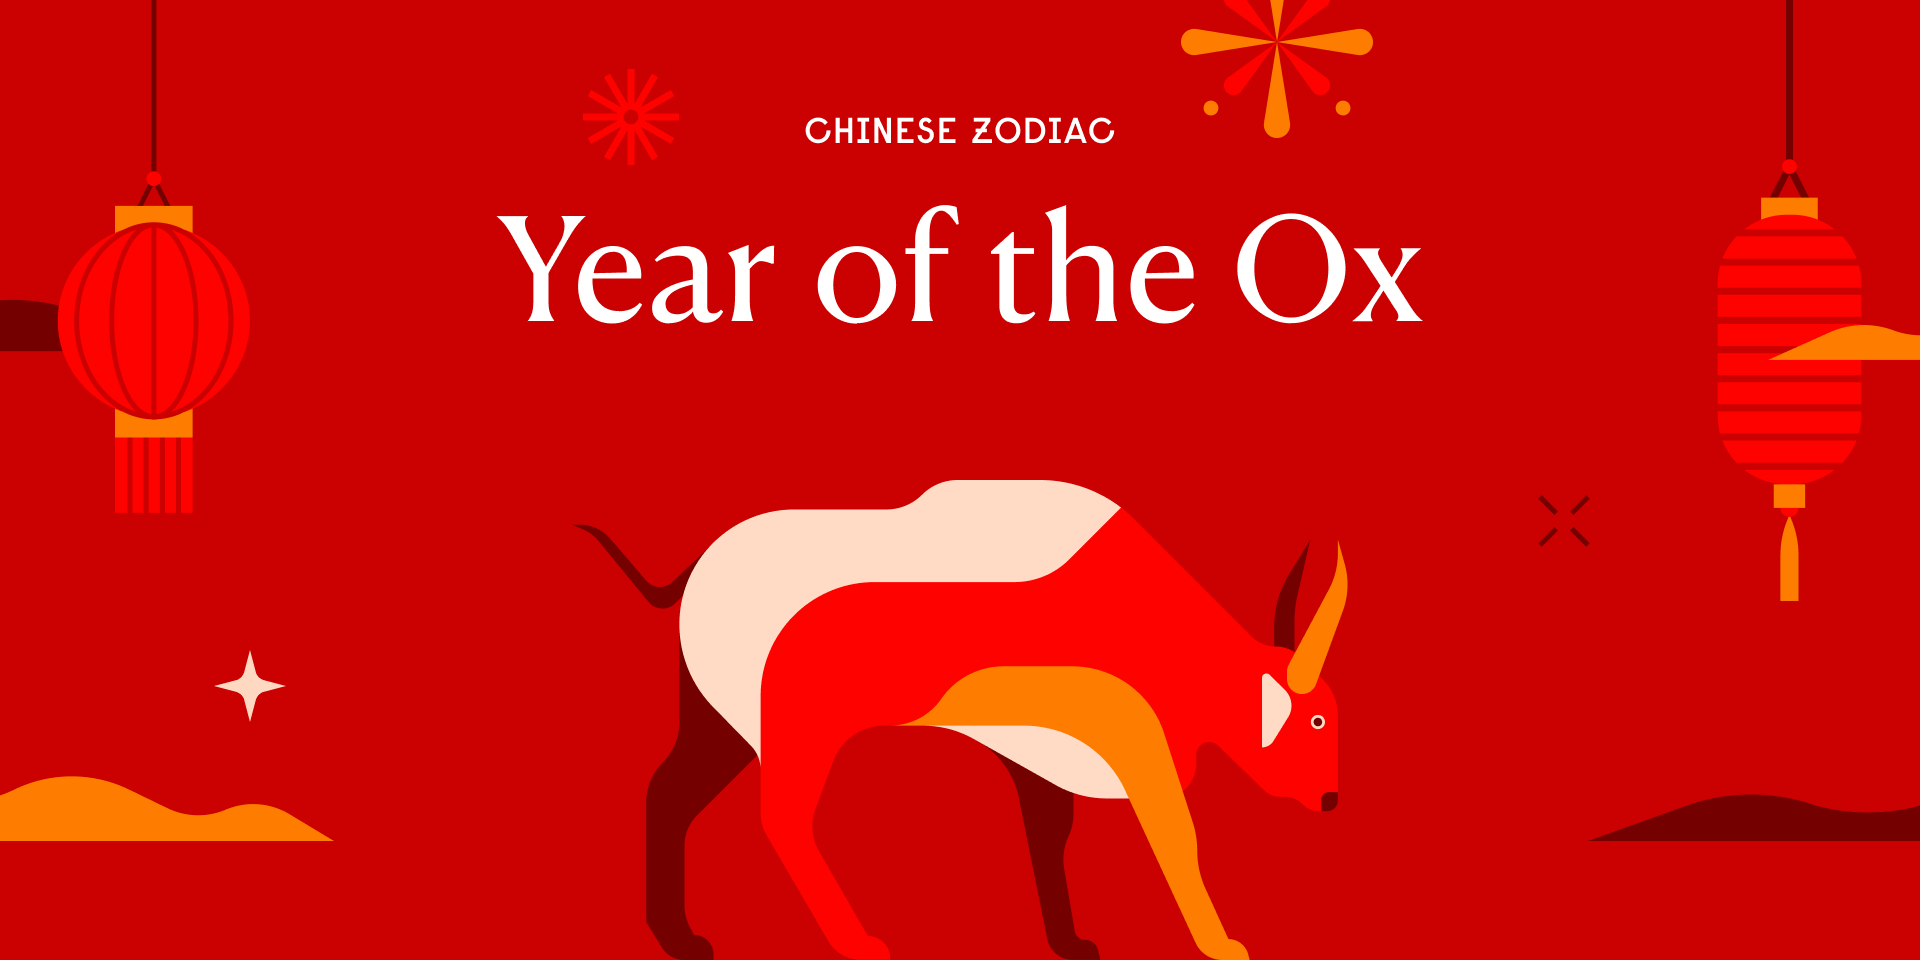 سال 2021 بر اساس زودیاک چینی سال گاو نر است. گاو نر (Ox) دومین حیوان بر اساس زودیاک چینی است.